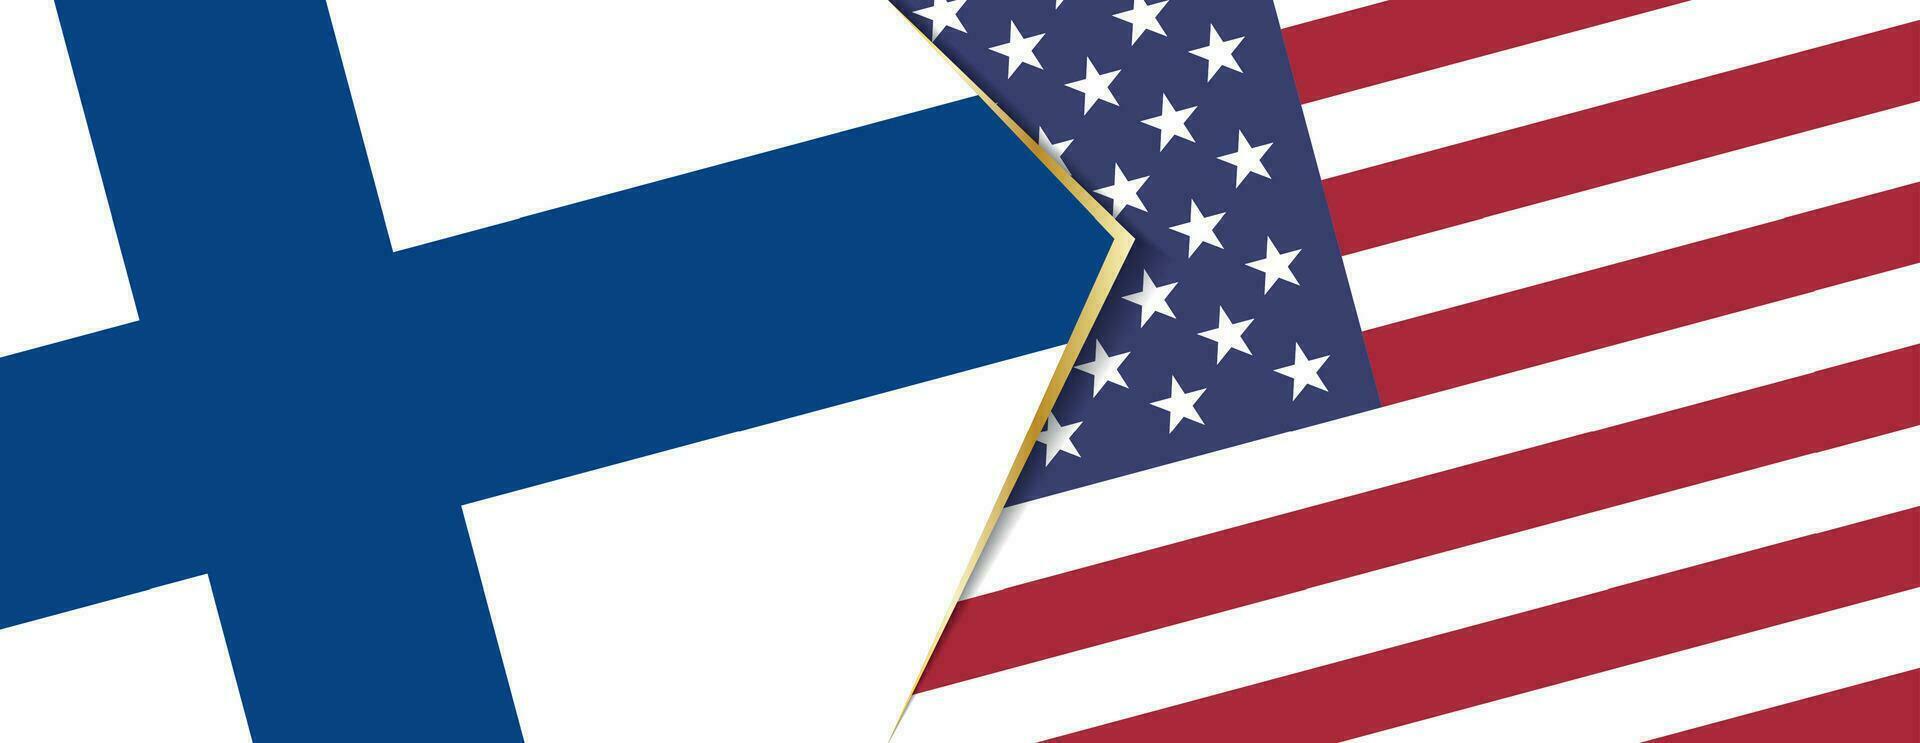 Finlandia y Estados Unidos banderas, dos vector banderas